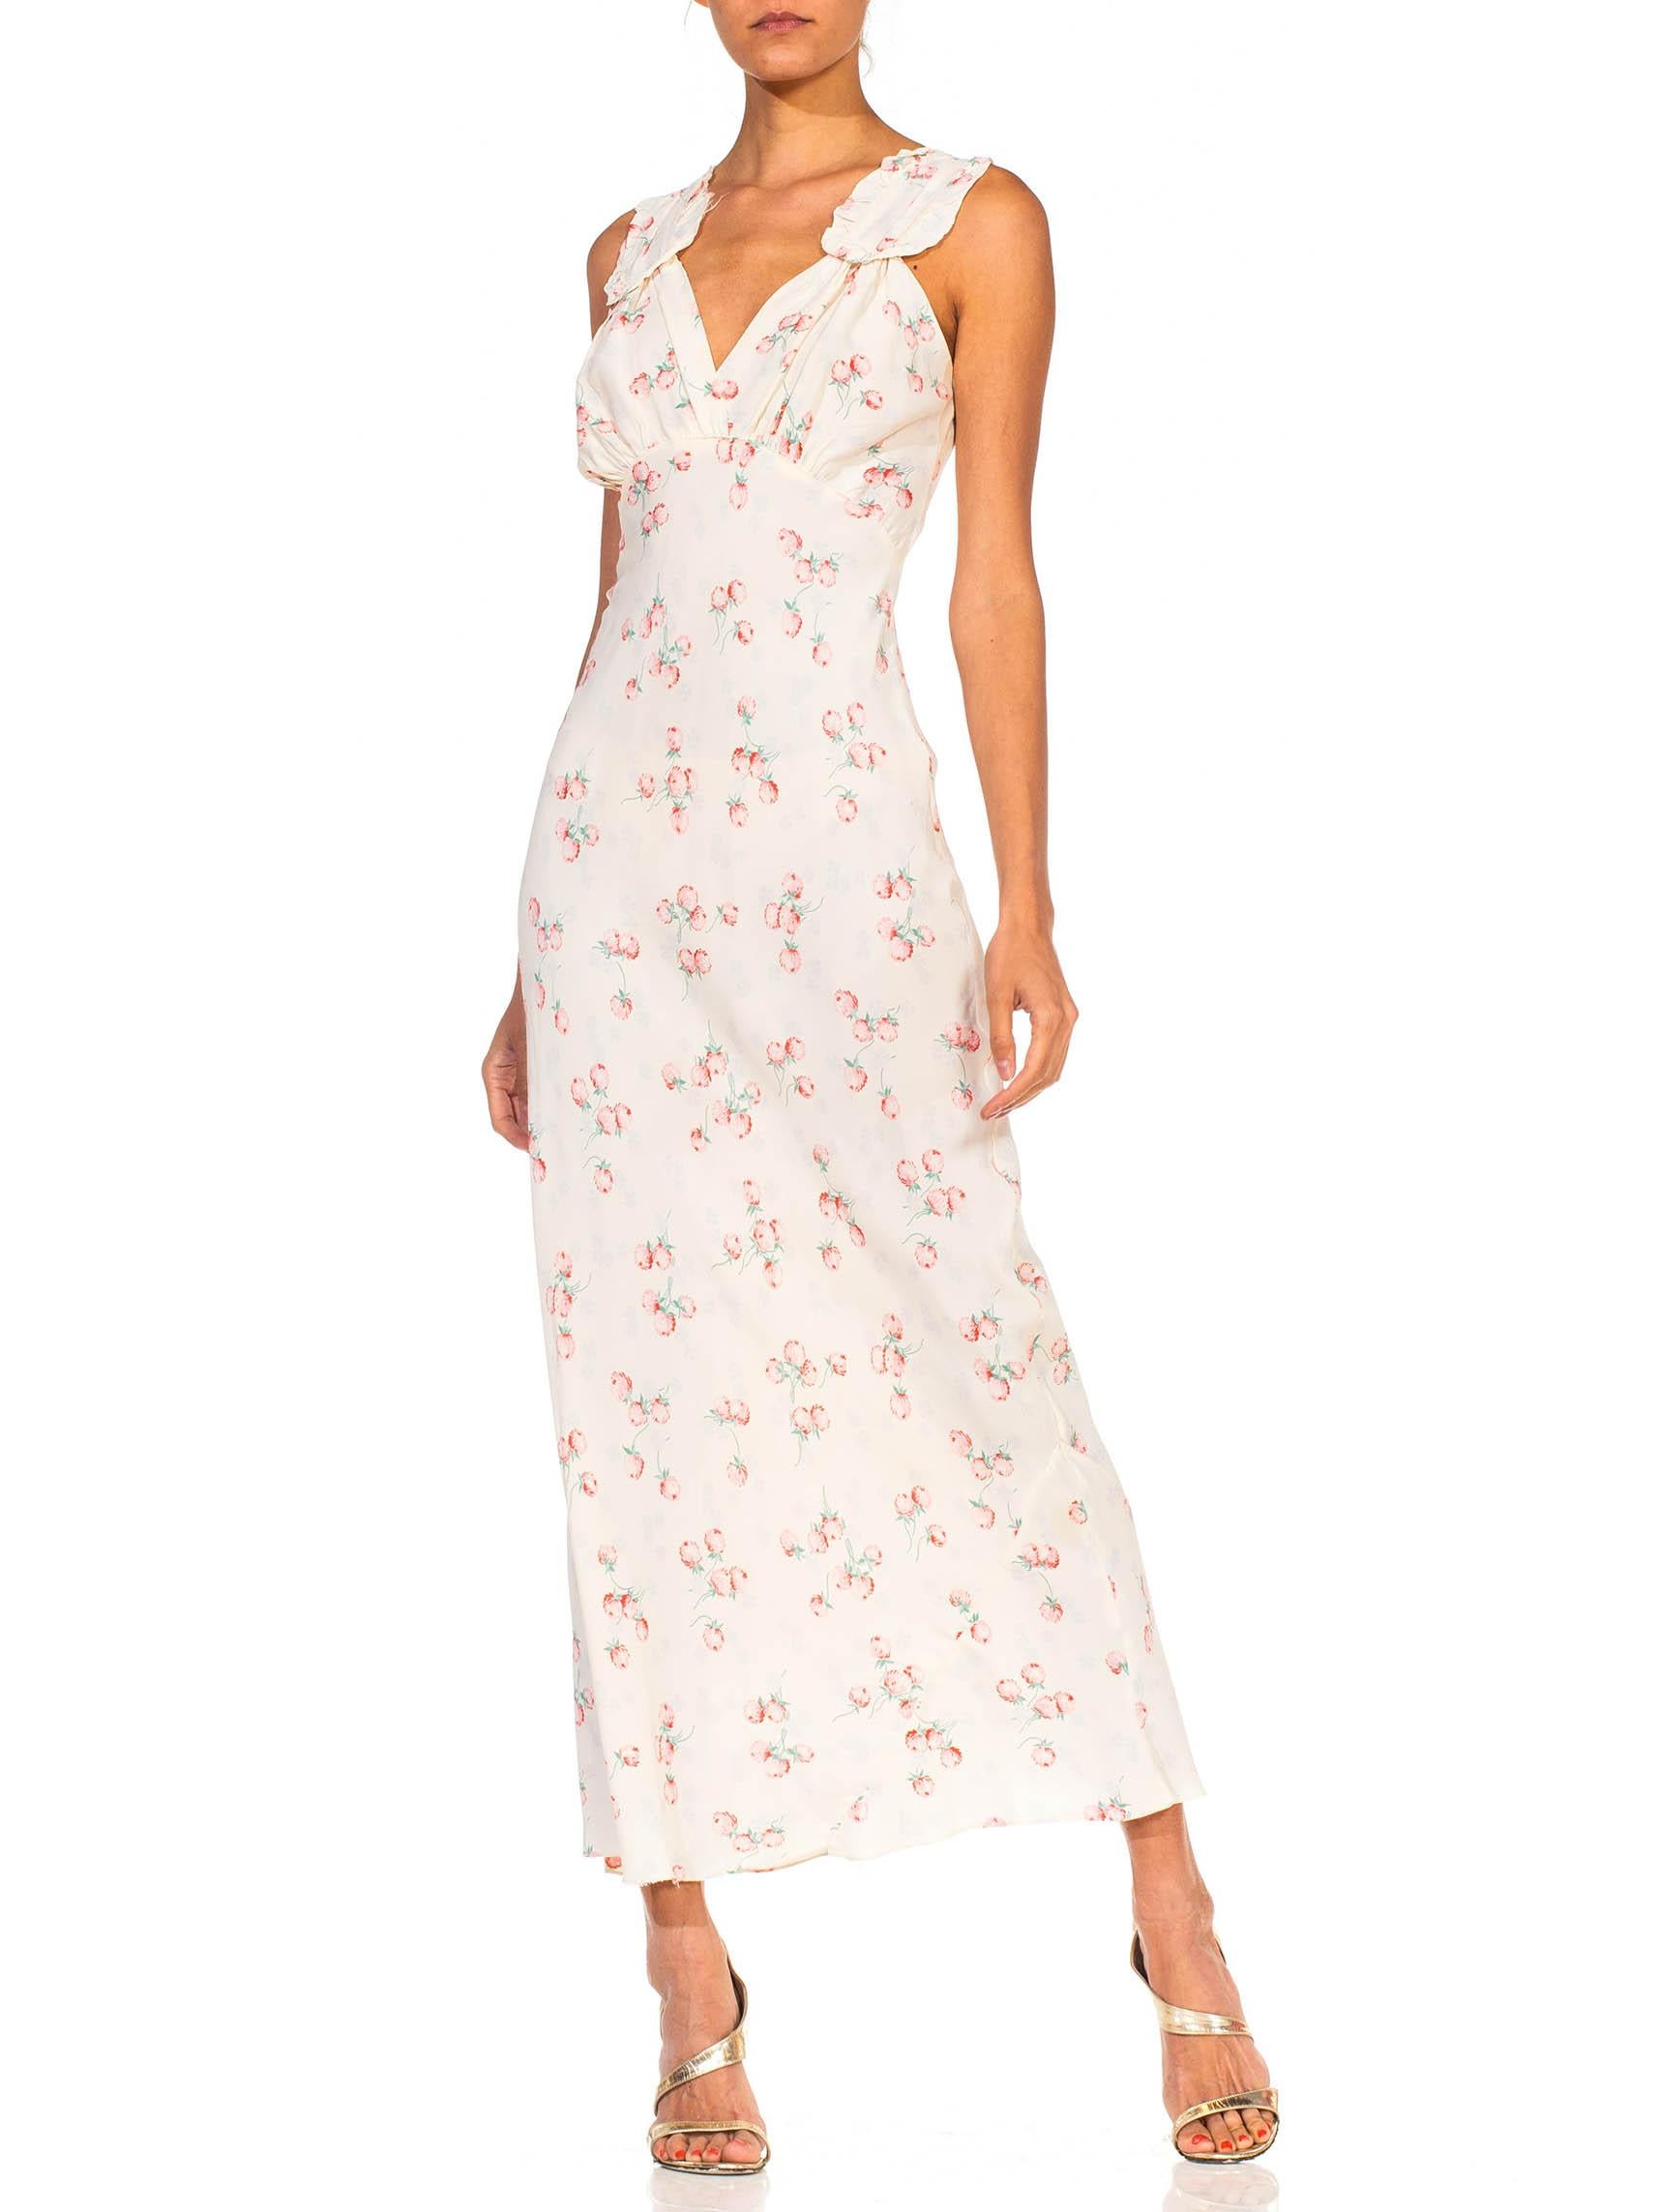 1940S White & Pink Rayon Bias Cut Floral Slip Dress Negligee 1